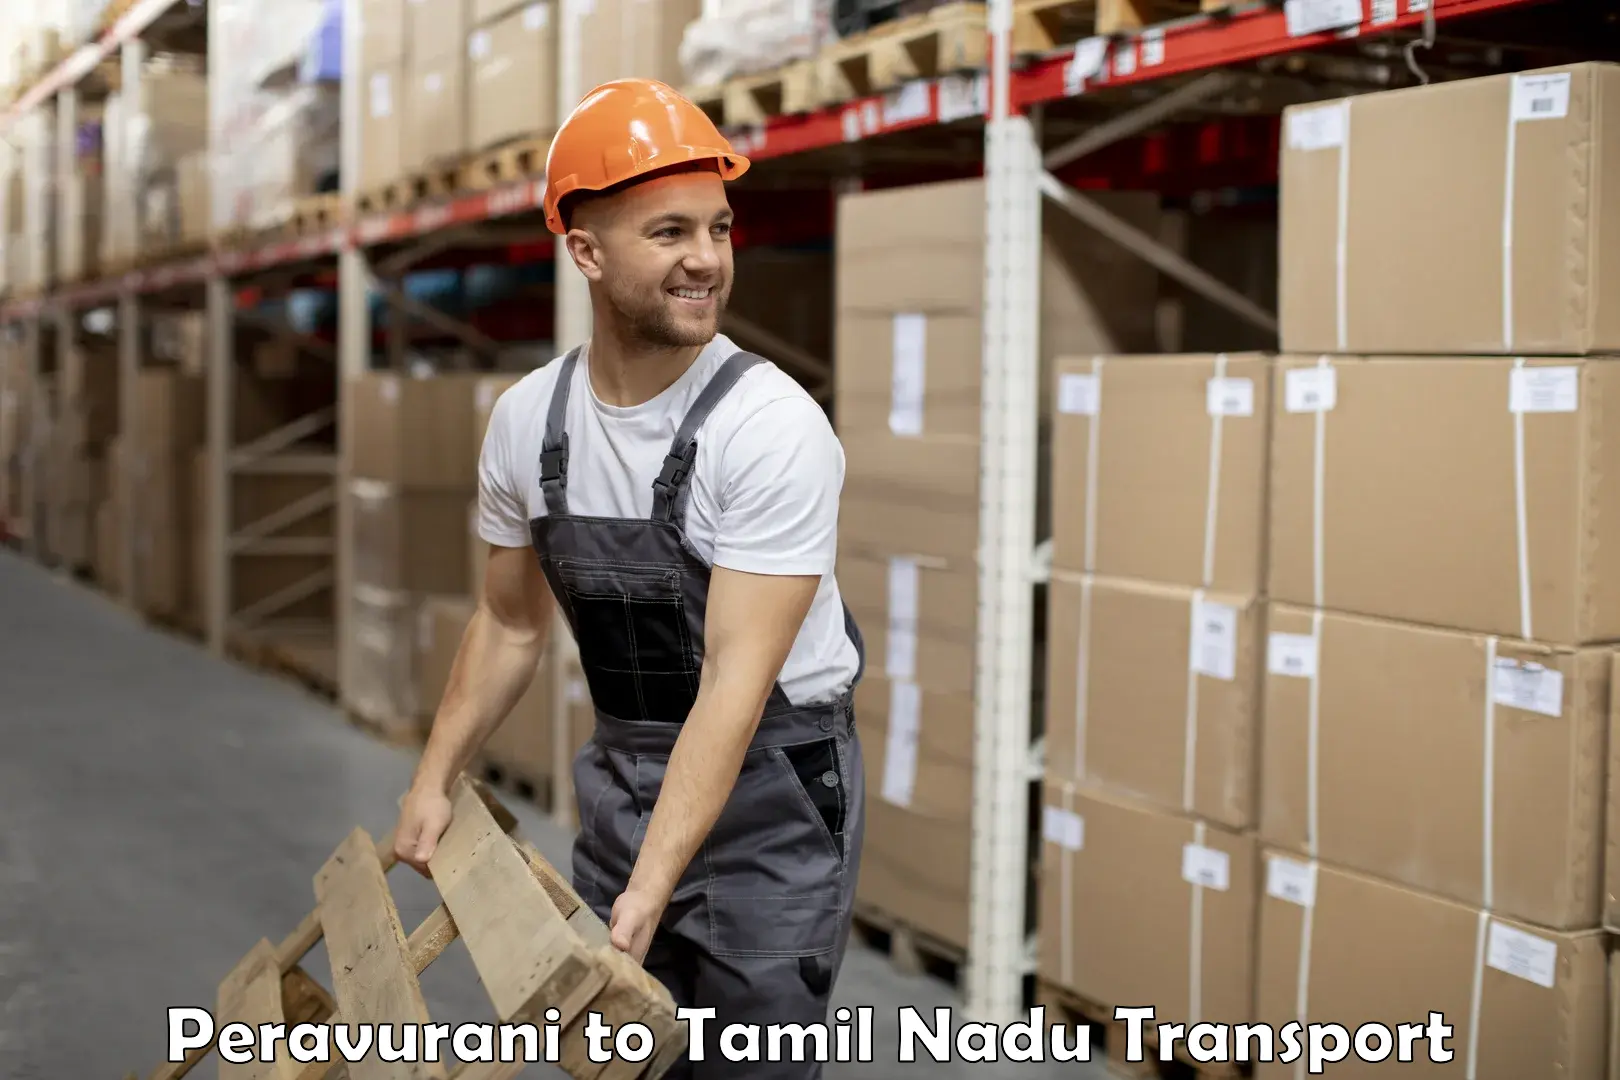 Delivery service Peravurani to Thondi